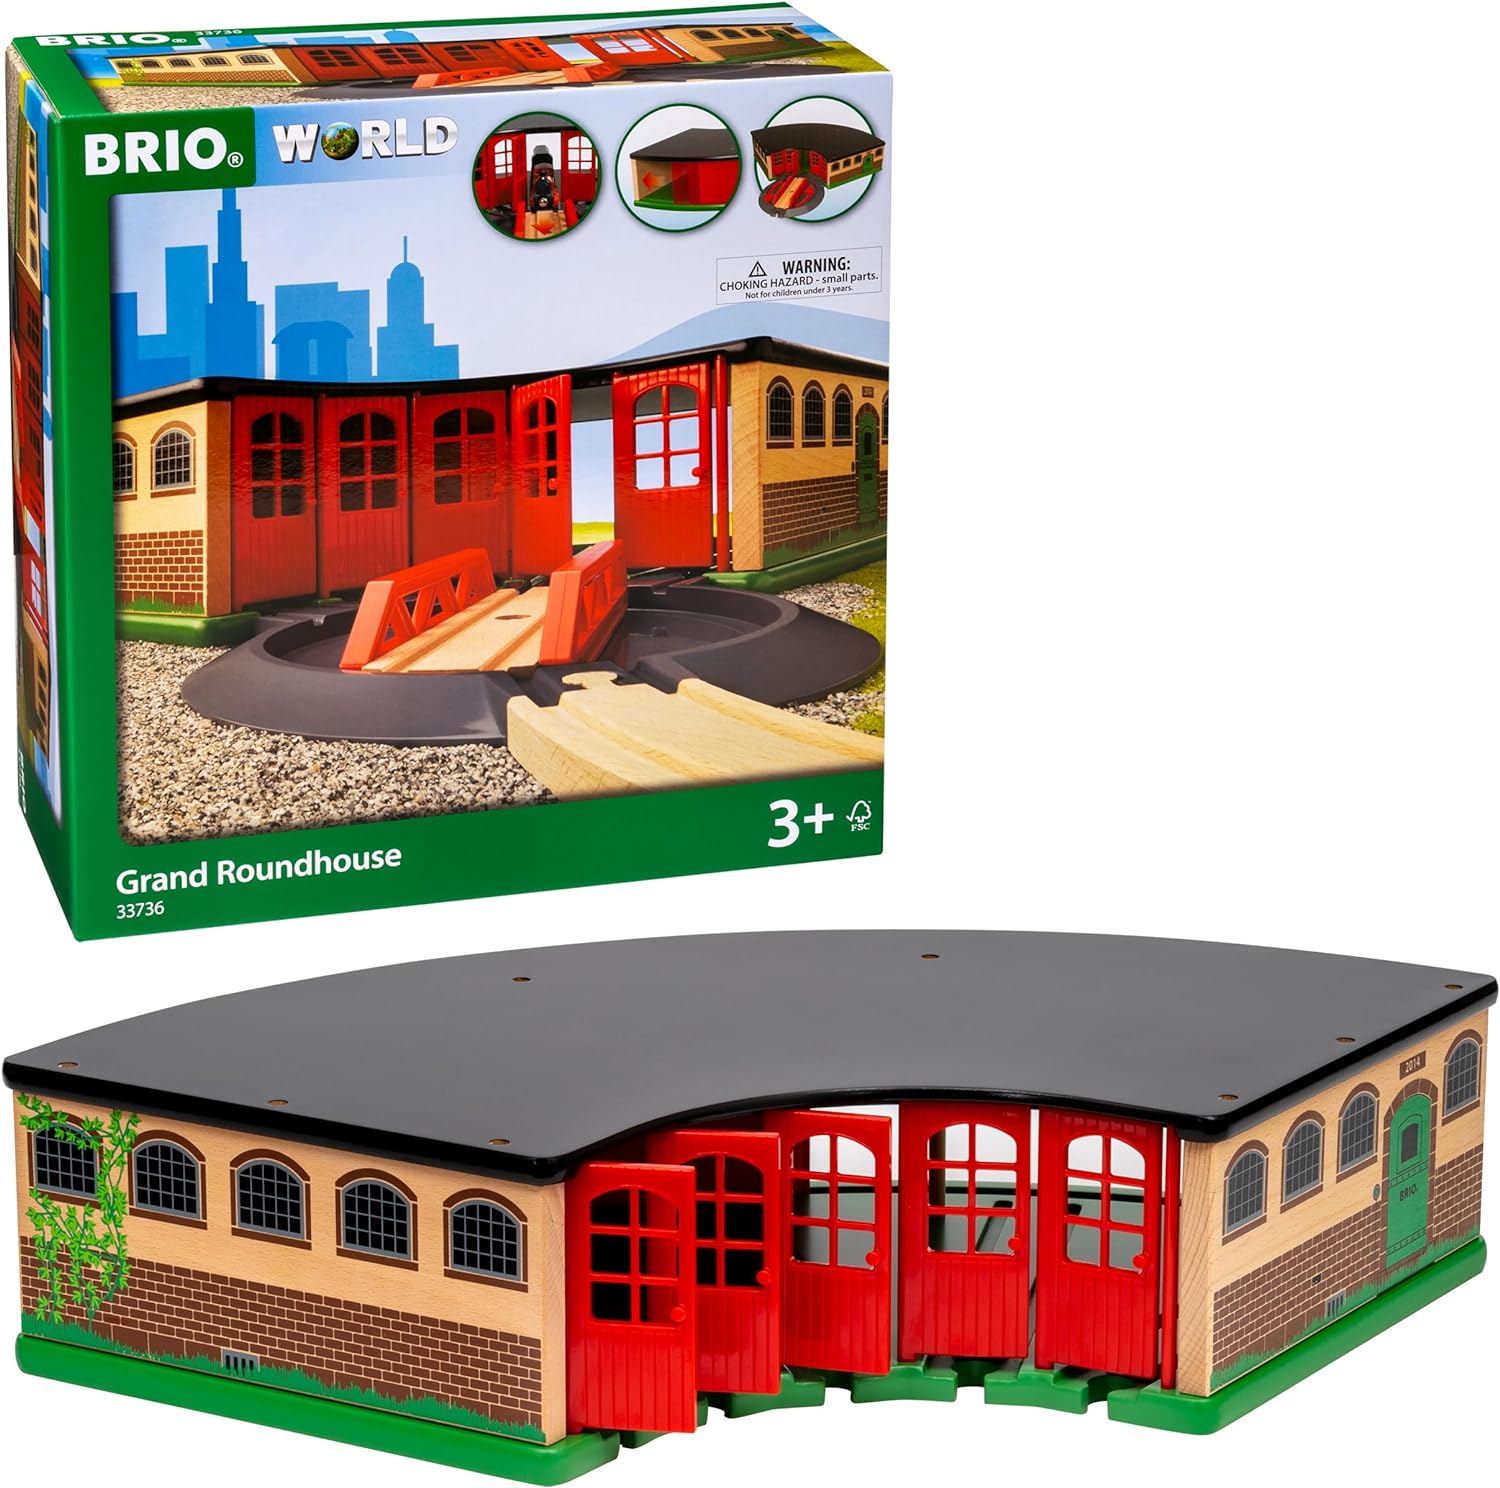 BRIO World 33736 Großer Ringlokschuppen mit Drehscheibe Zubehör Holzeisenbahn Kleinkinderspielzeug Holzspielzeug